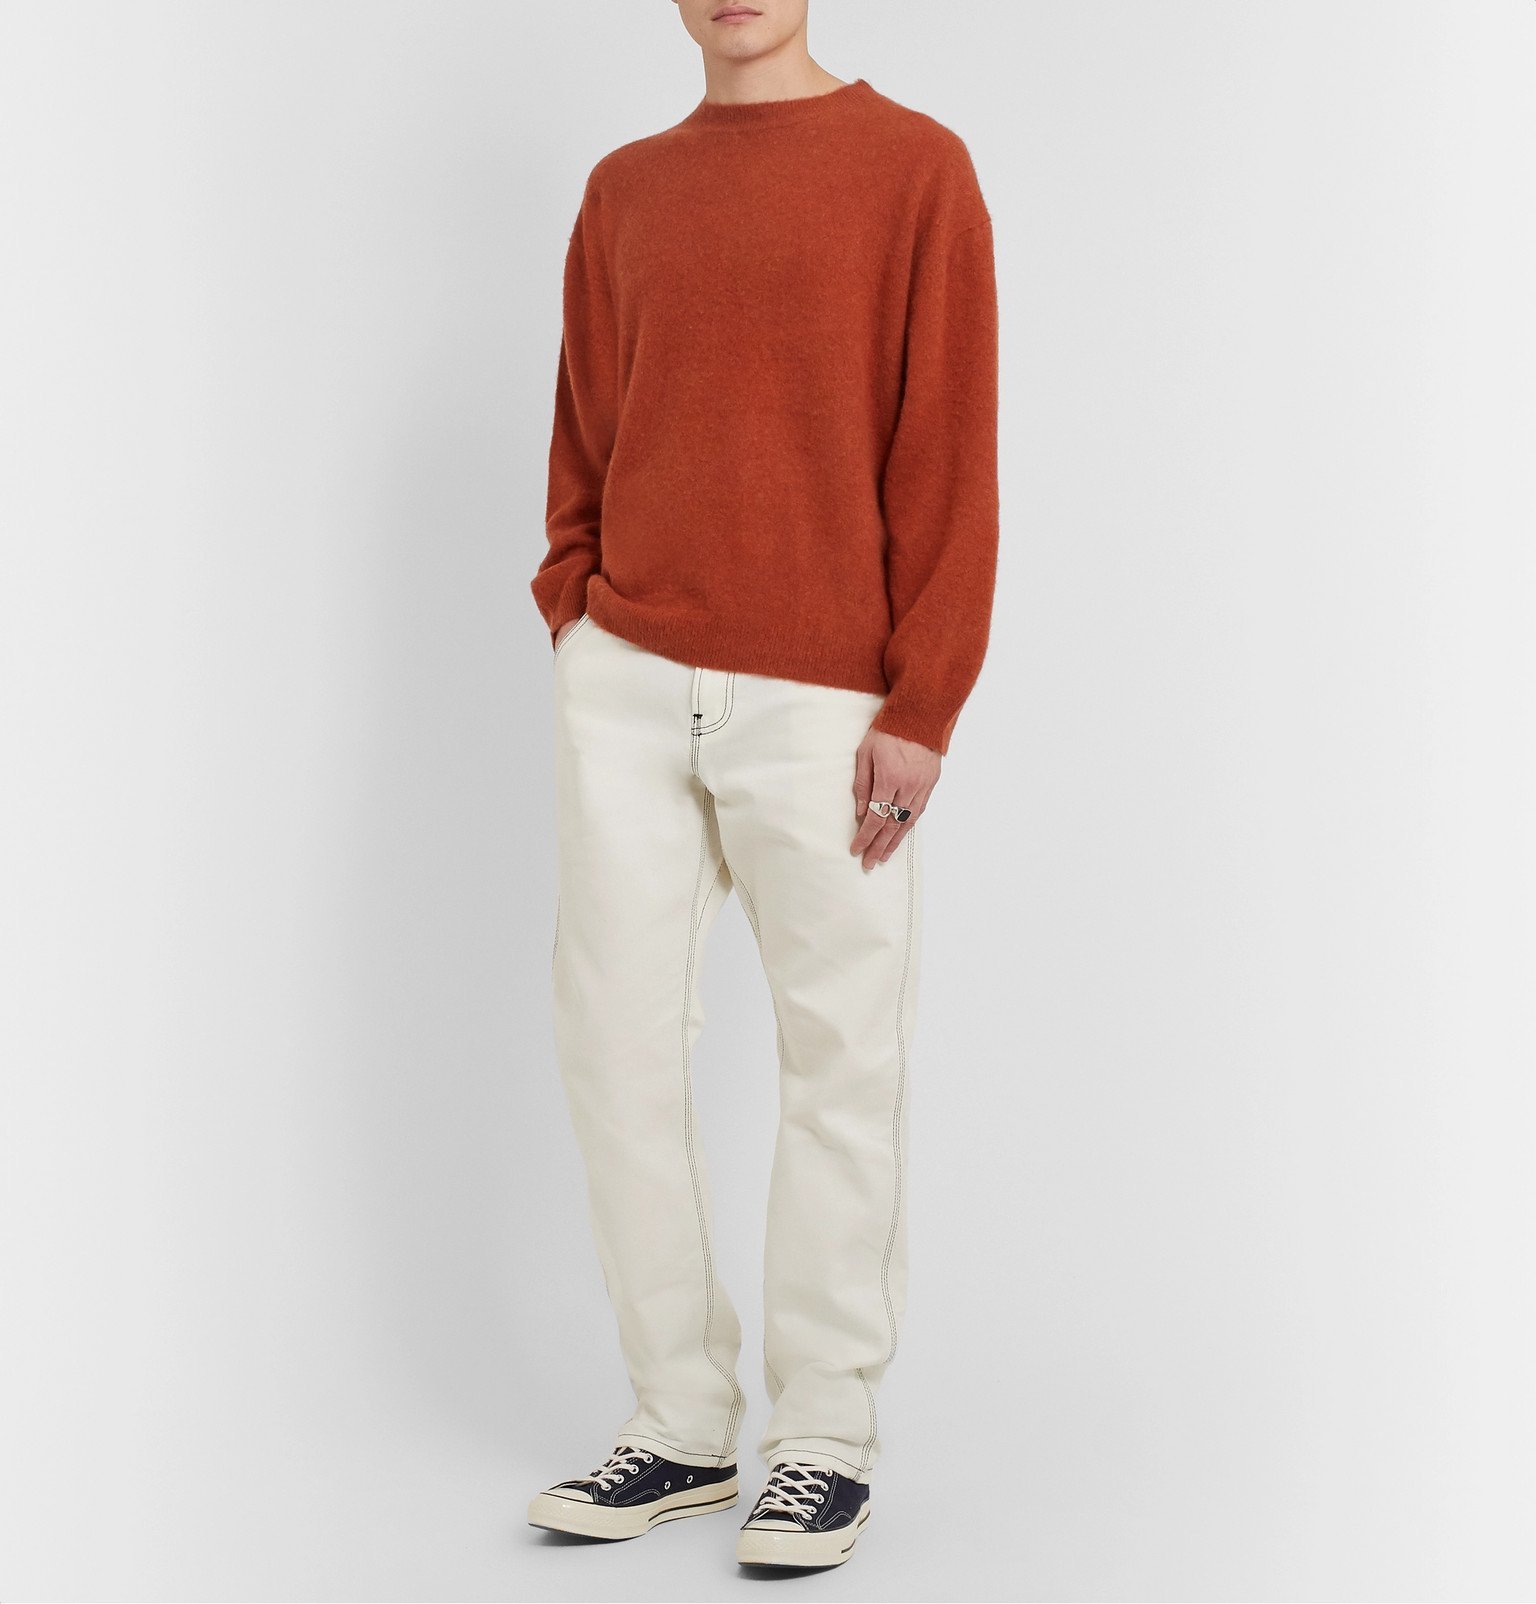 Remi Relief - Cashmere Sweater - Orange Remi Relief